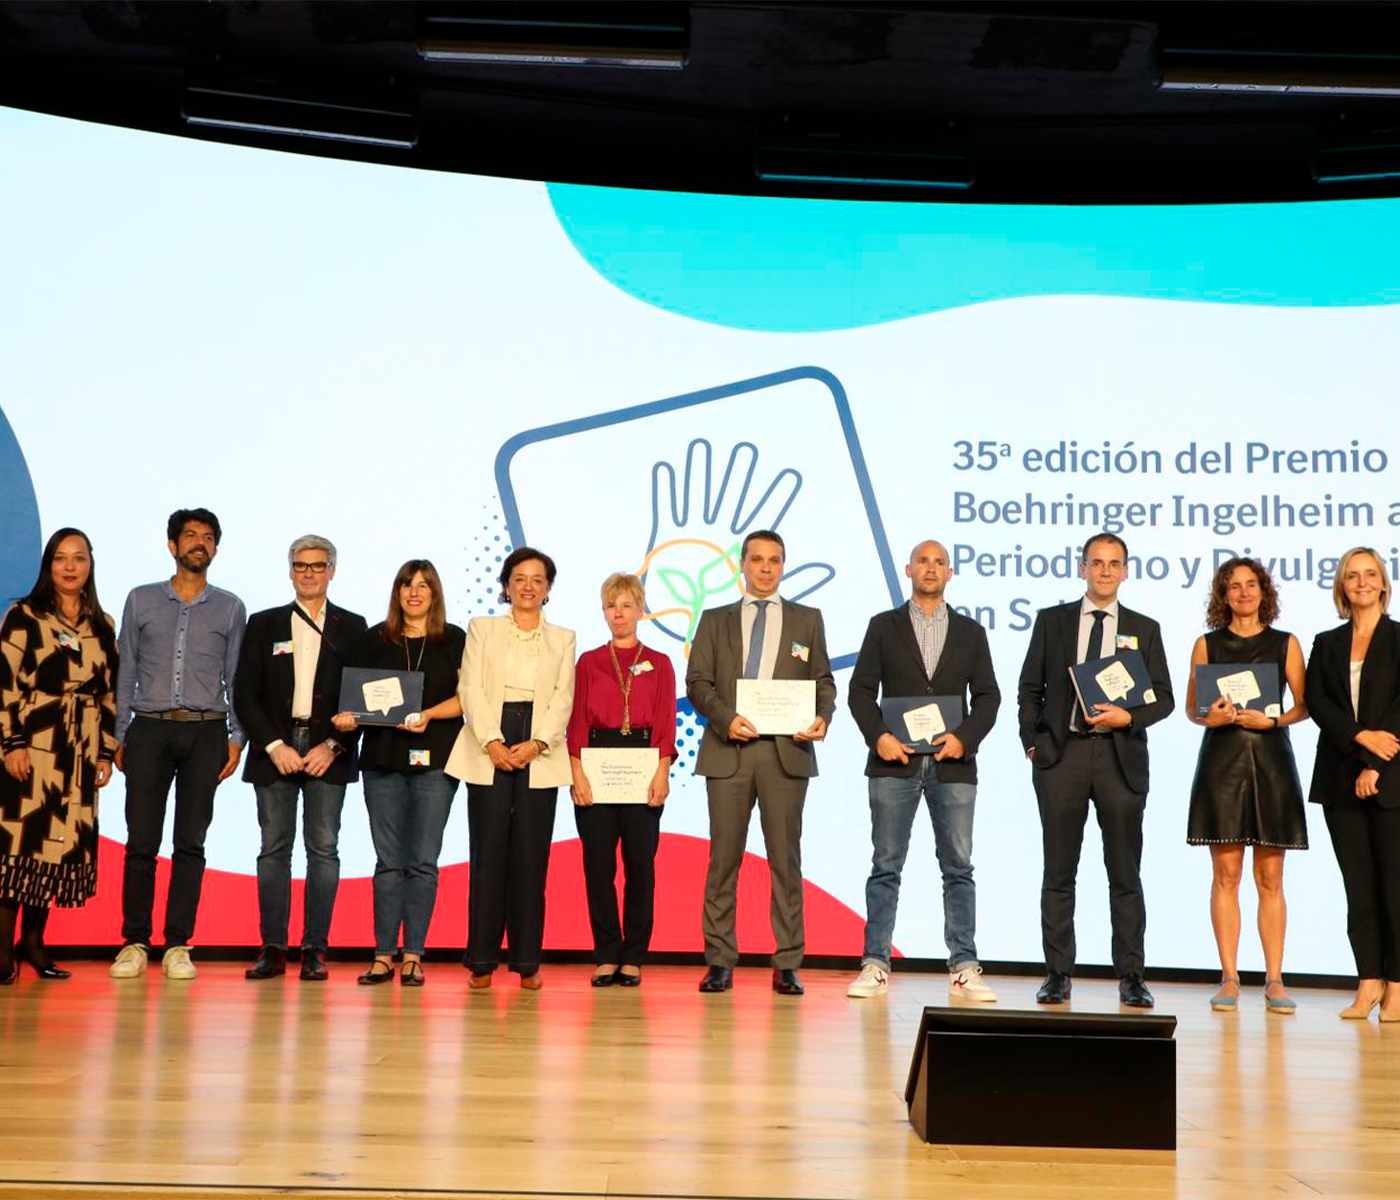 Ganadores de la 35ª edición del Premio Periodístico Boehringer Ingelheim al Periodismo y Divulgación en Salud